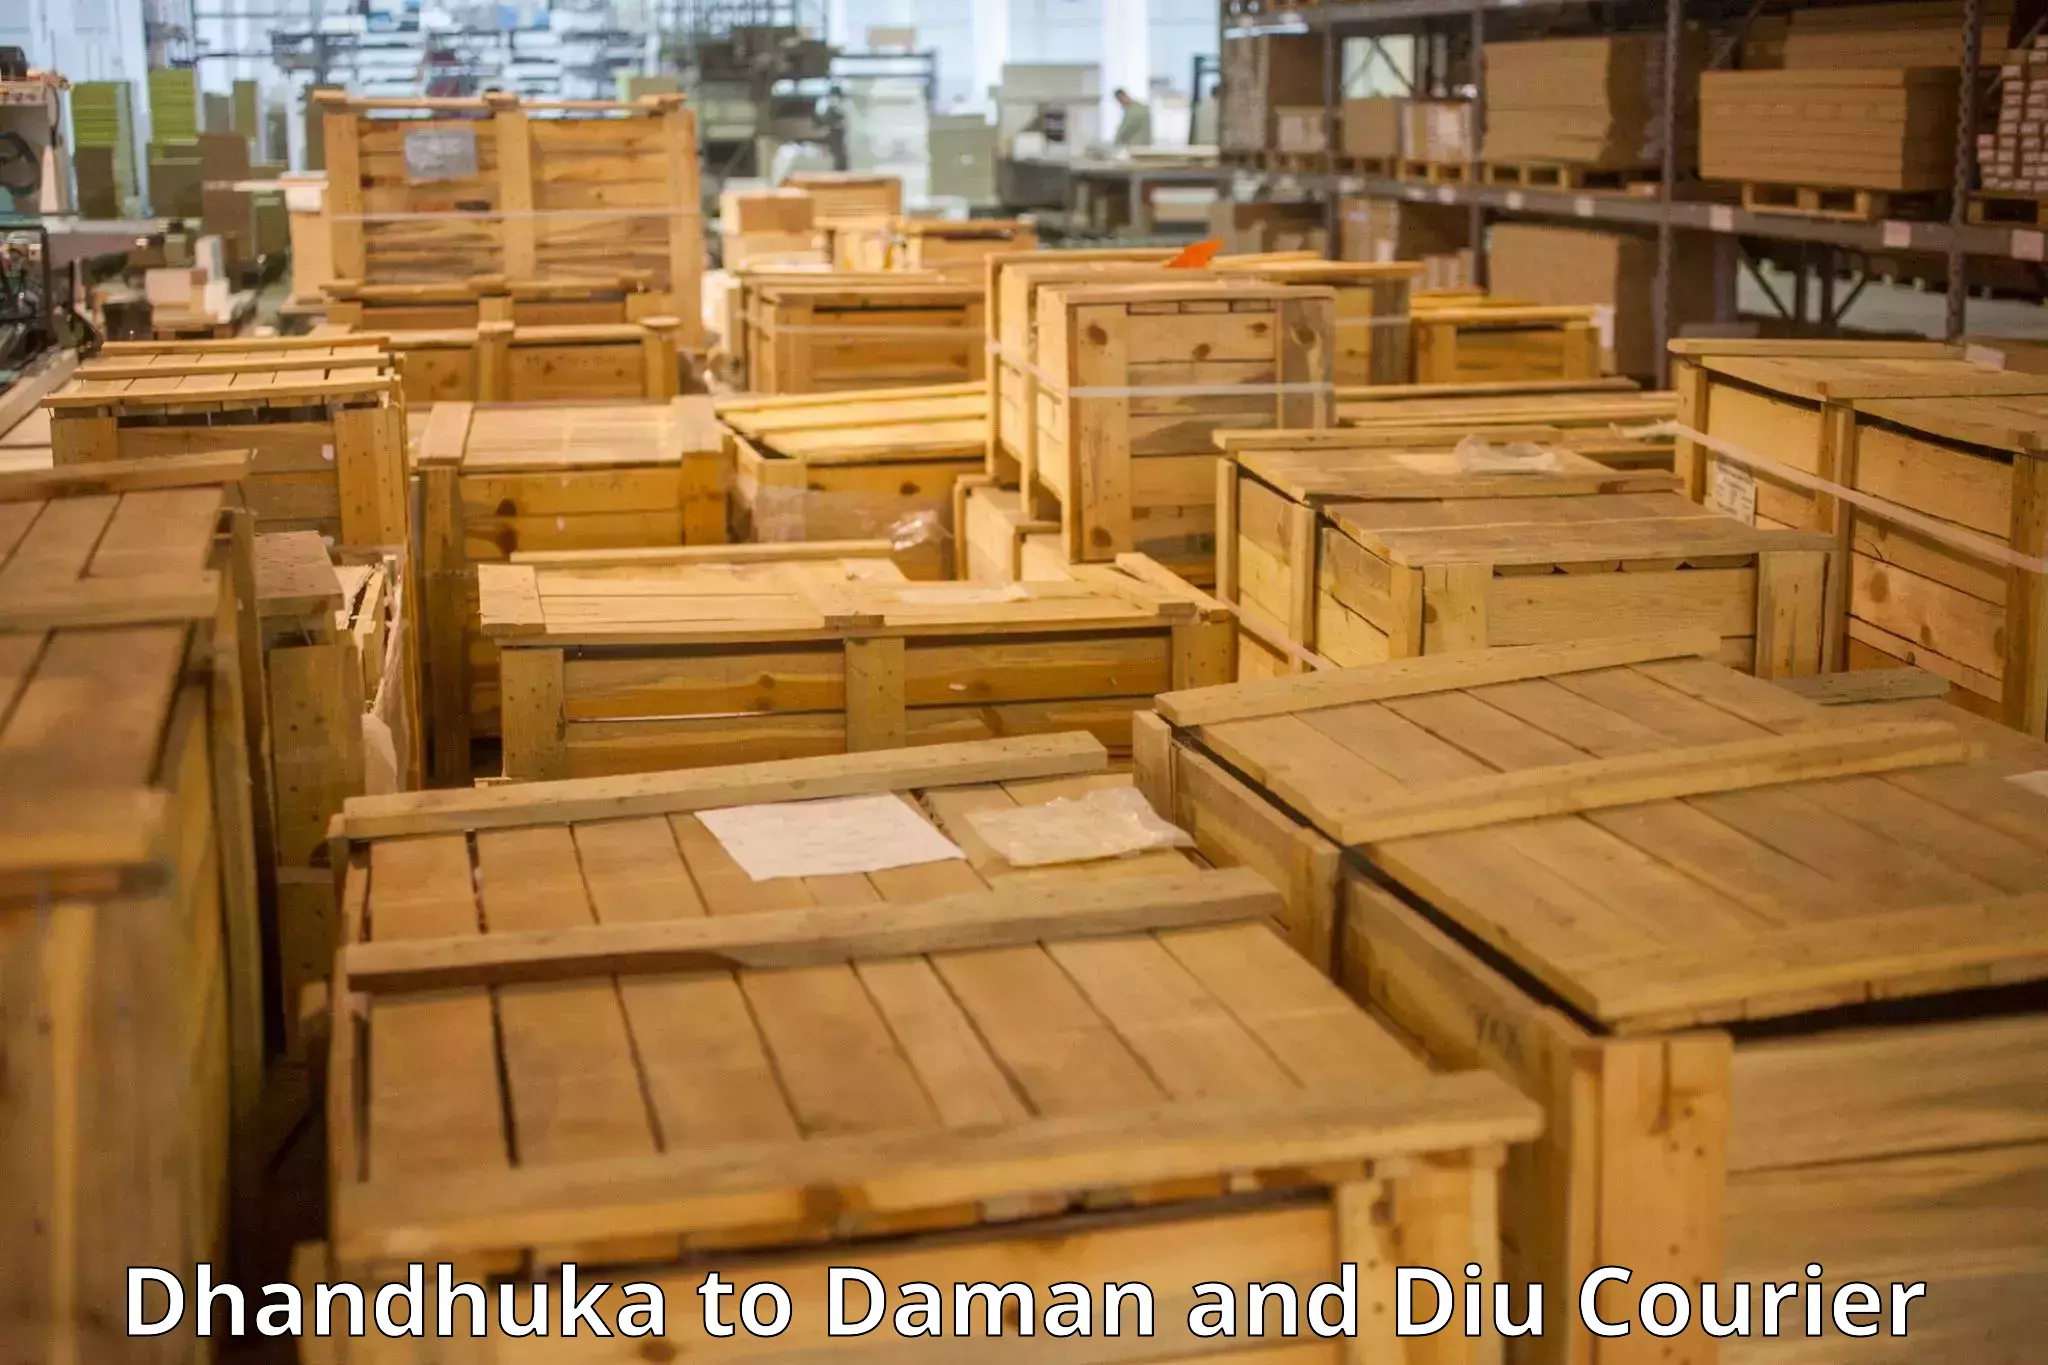 Luggage transit service Dhandhuka to Daman and Diu